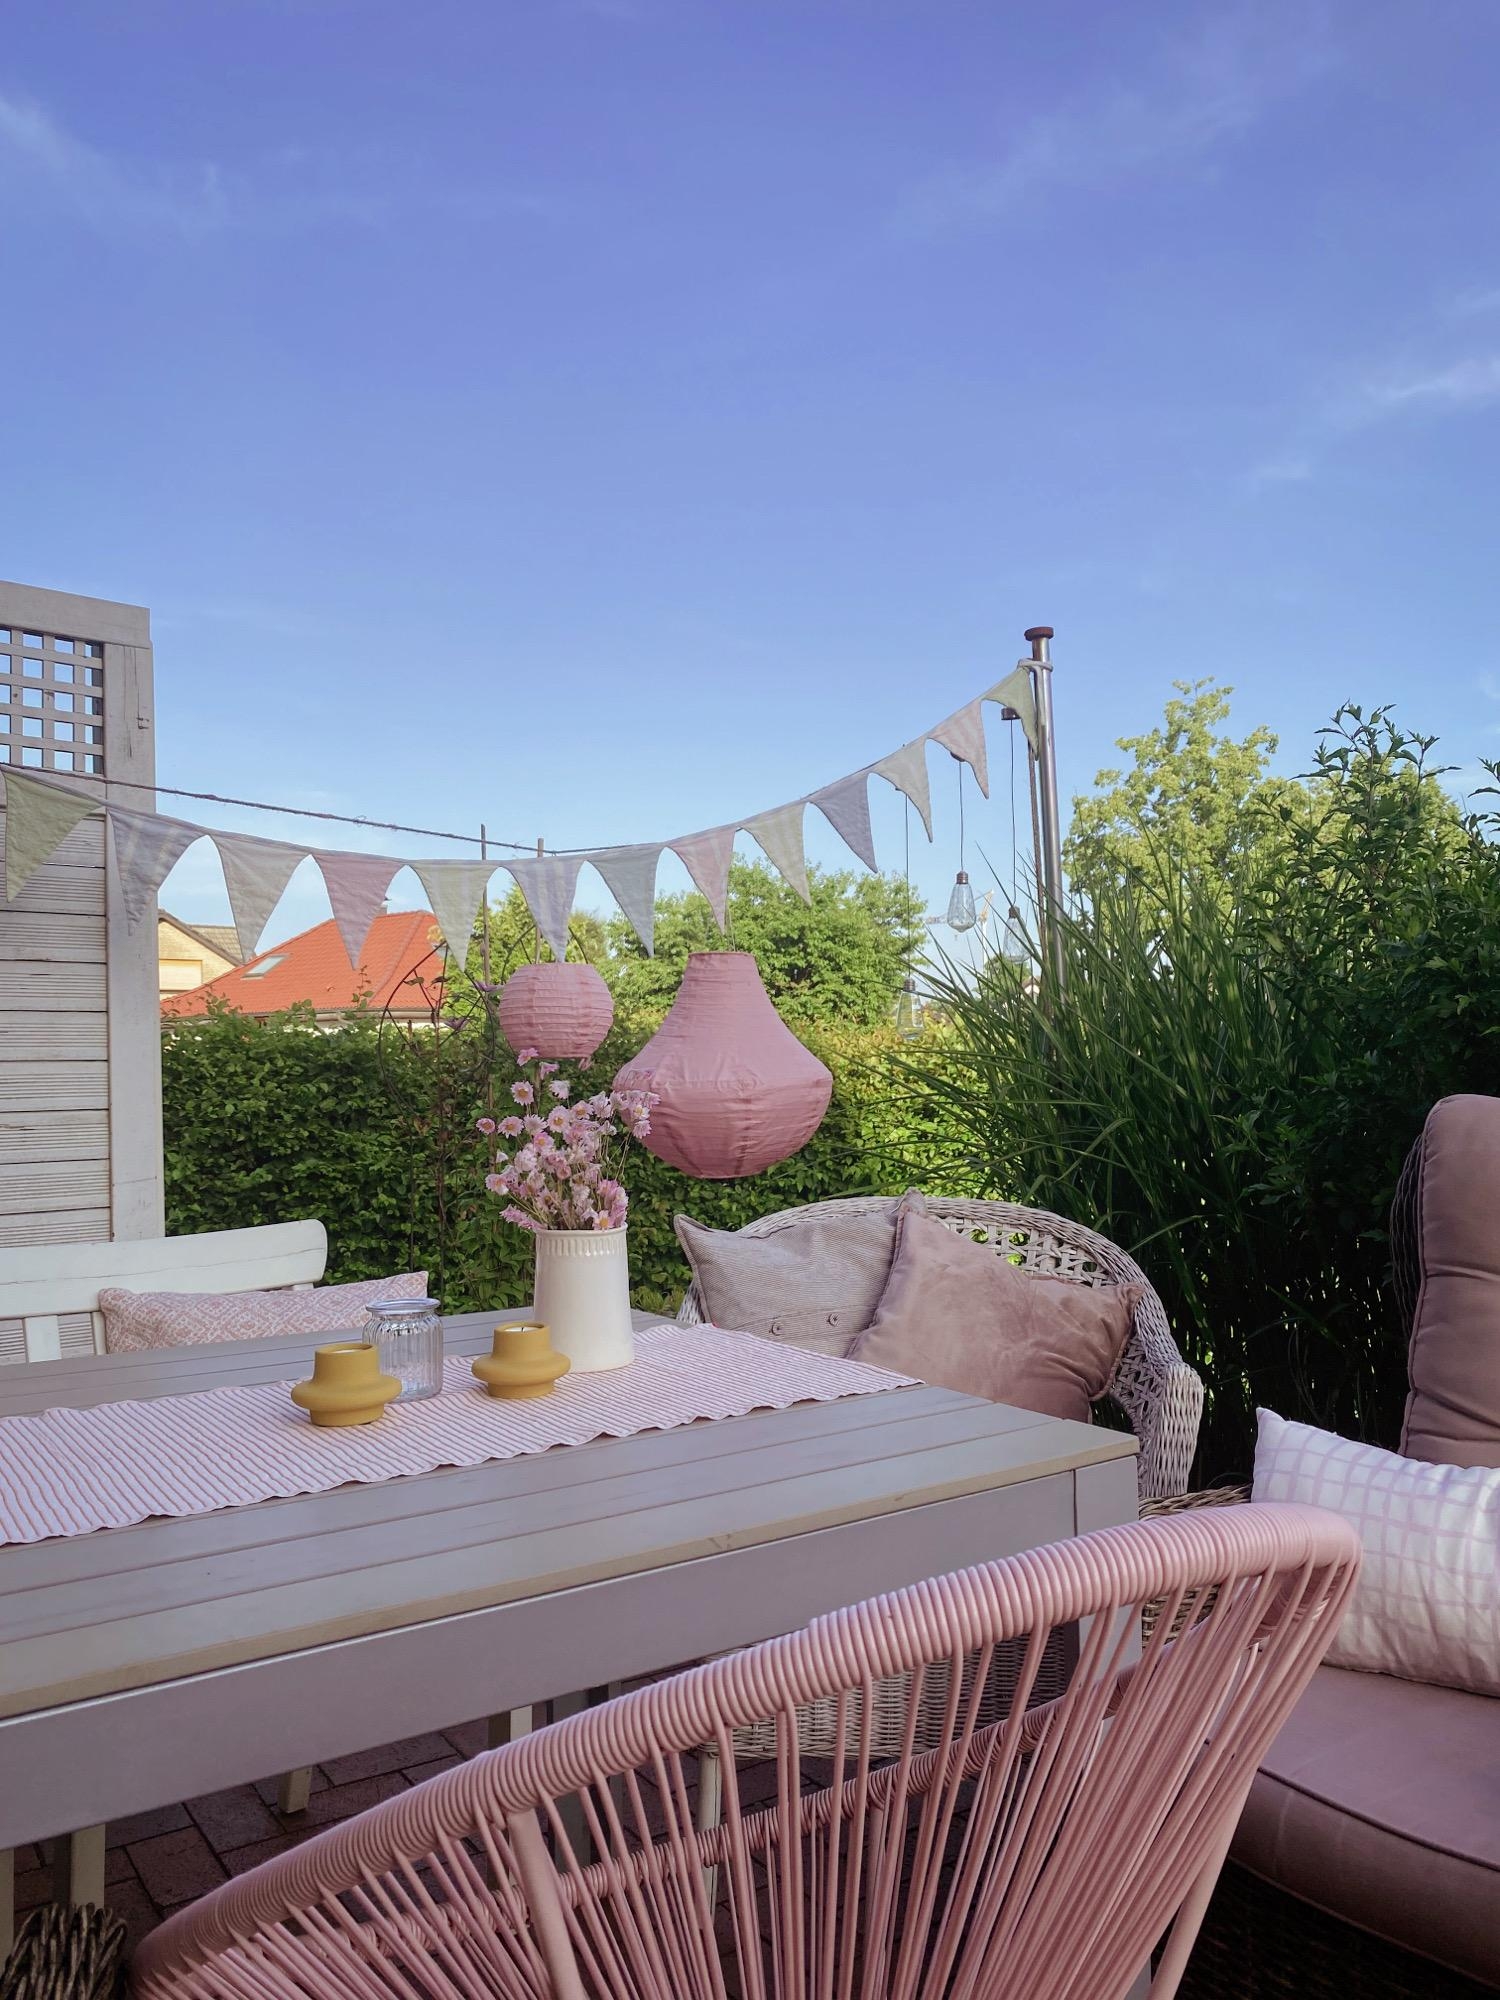 Terrassenblick 
#garten#summerfeeling#cozyhome#terrassendeko#landhausstyle#hygge#blauerhimmel#summervibes